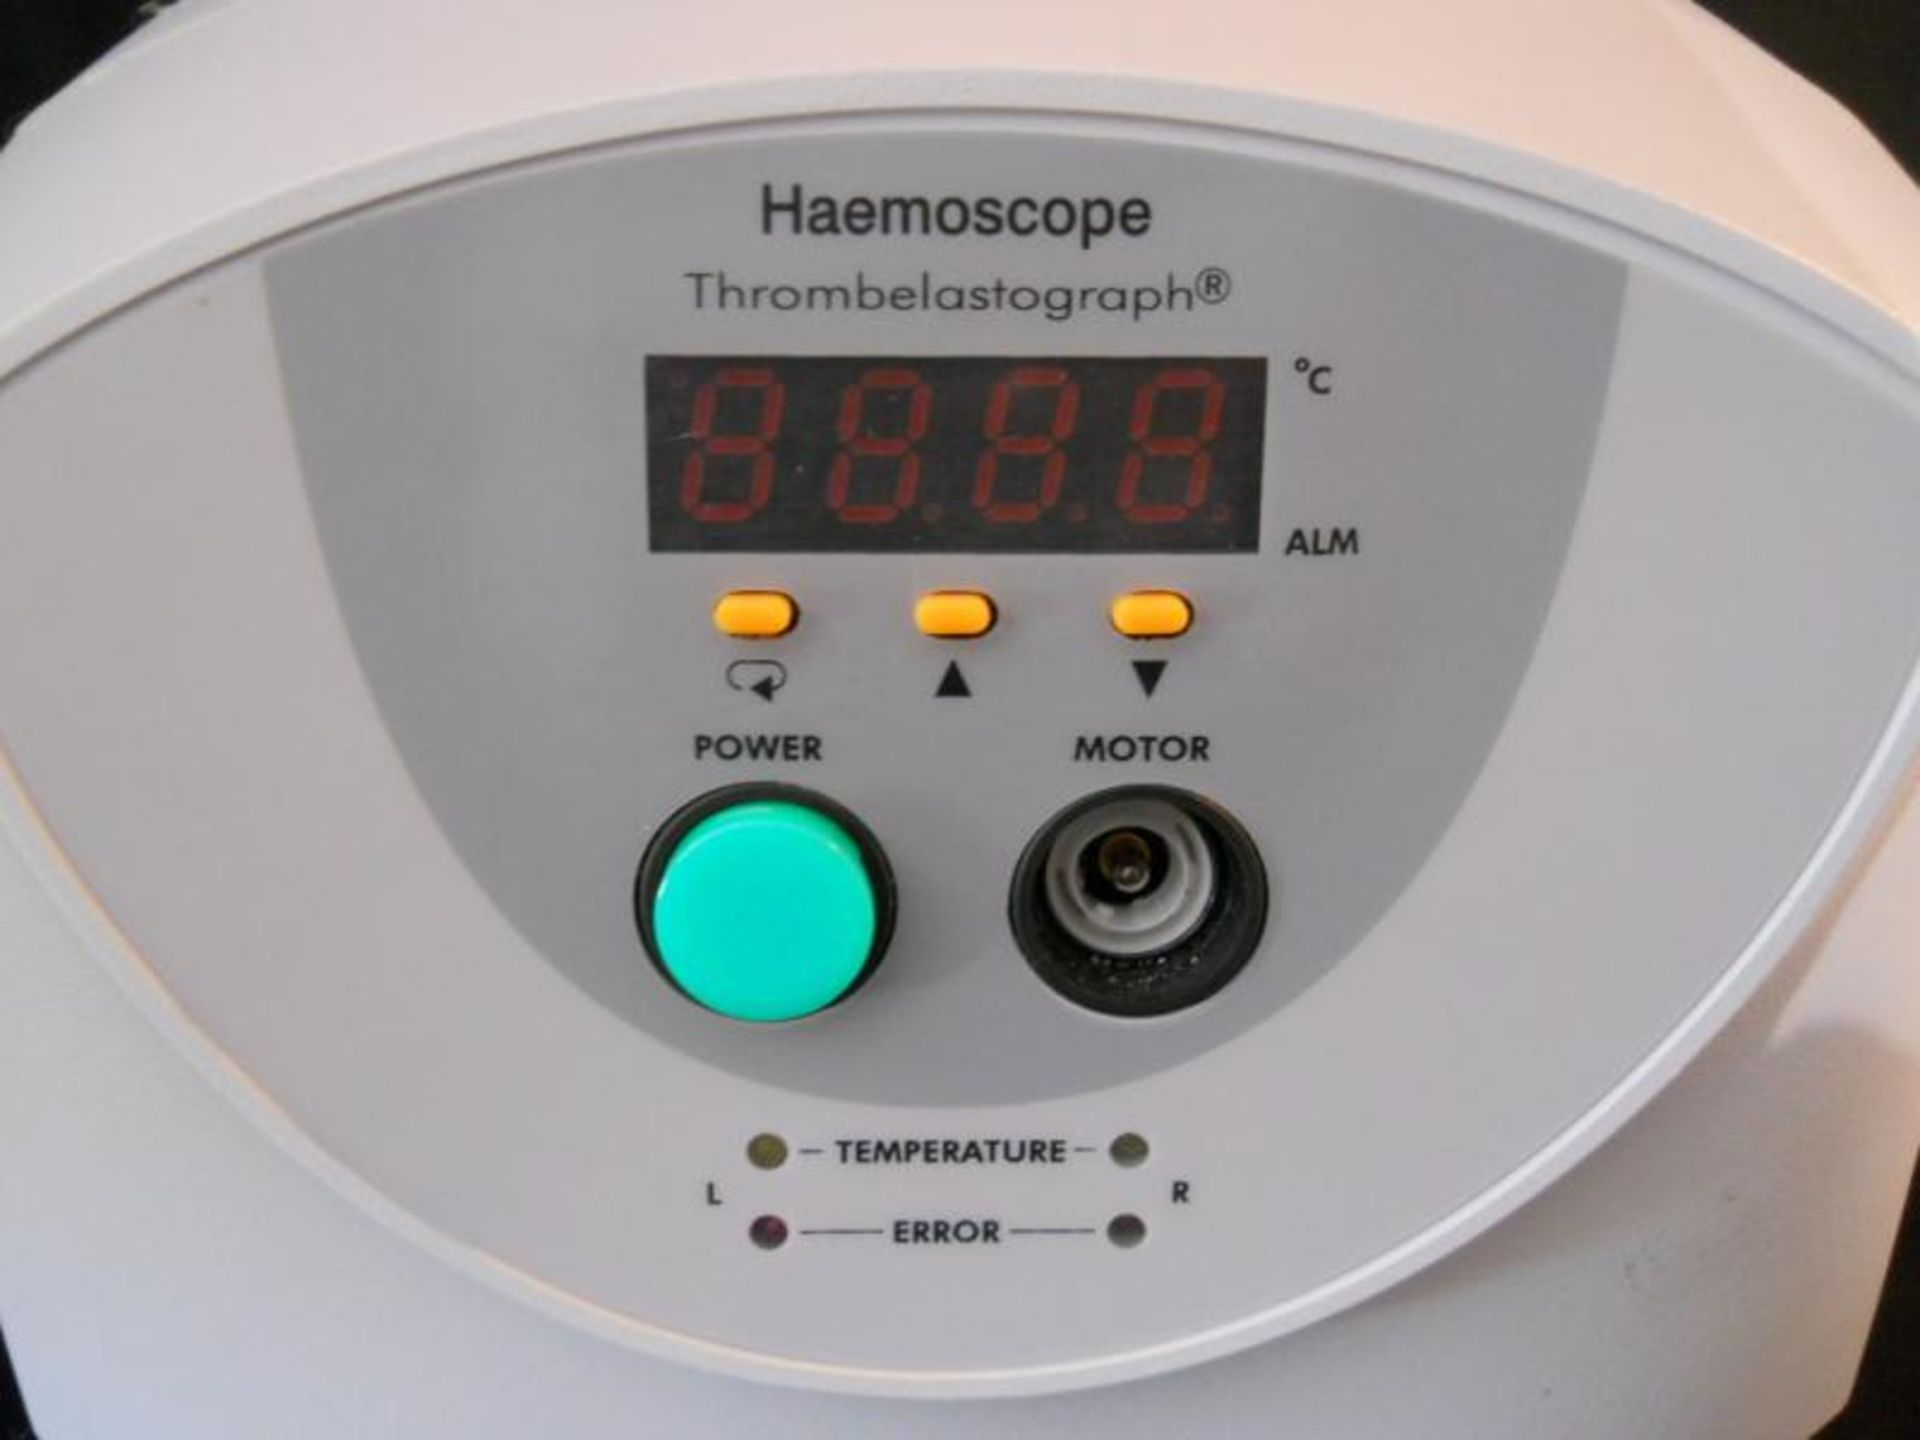 Haemoscope Thrombelastograph Coagulation Analyzer 4000T (Haemostasis Blood), Qty 1, 330941703286 - Image 2 of 10